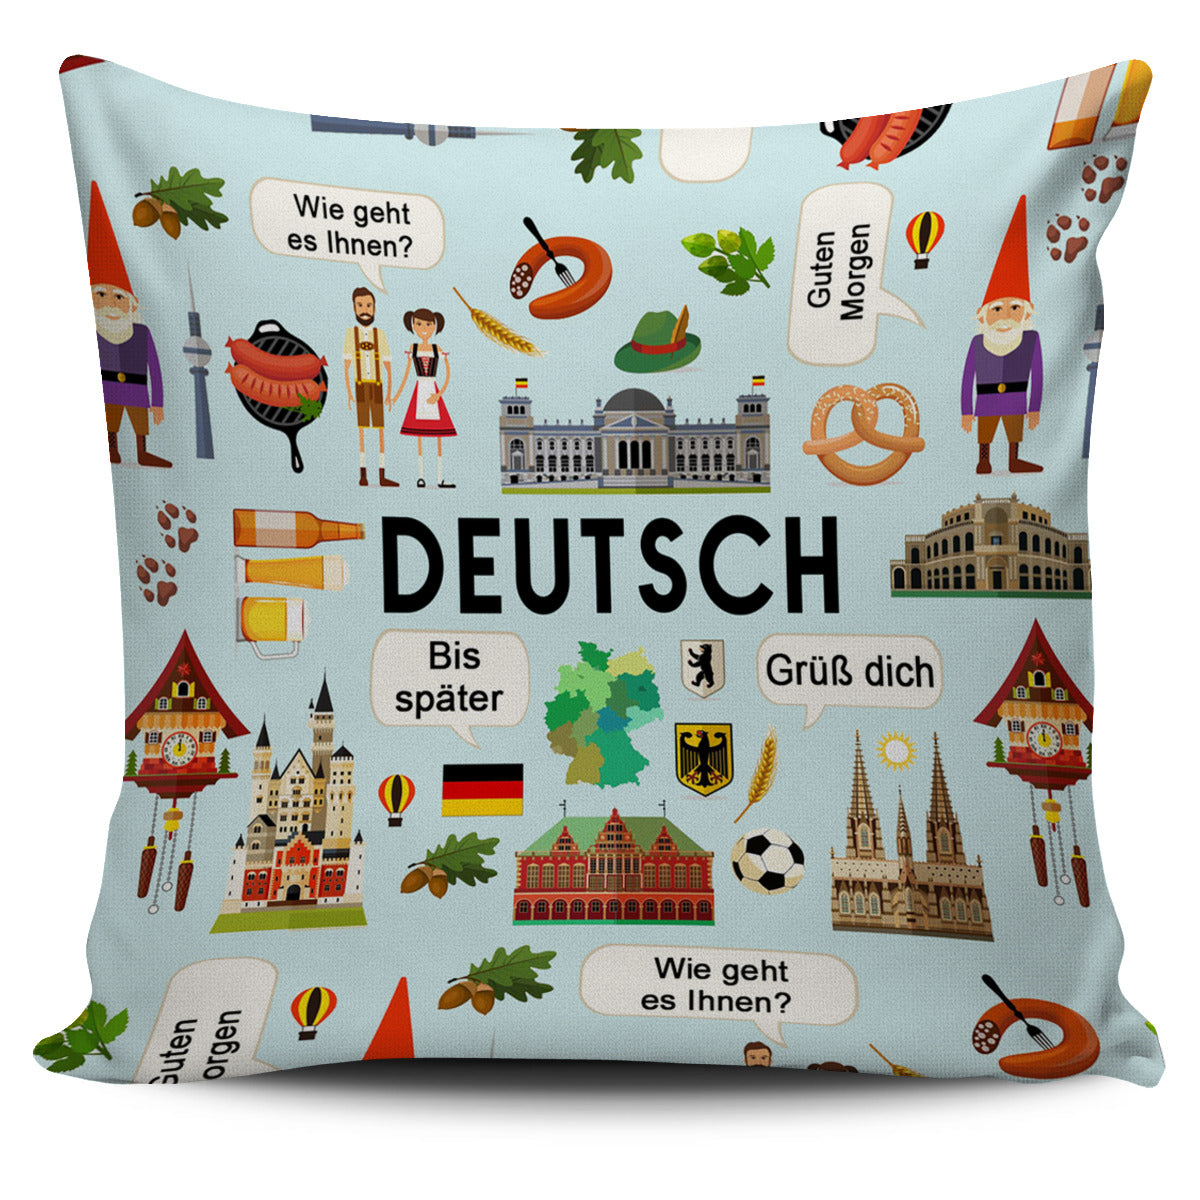 German Teacher Pillow Cover